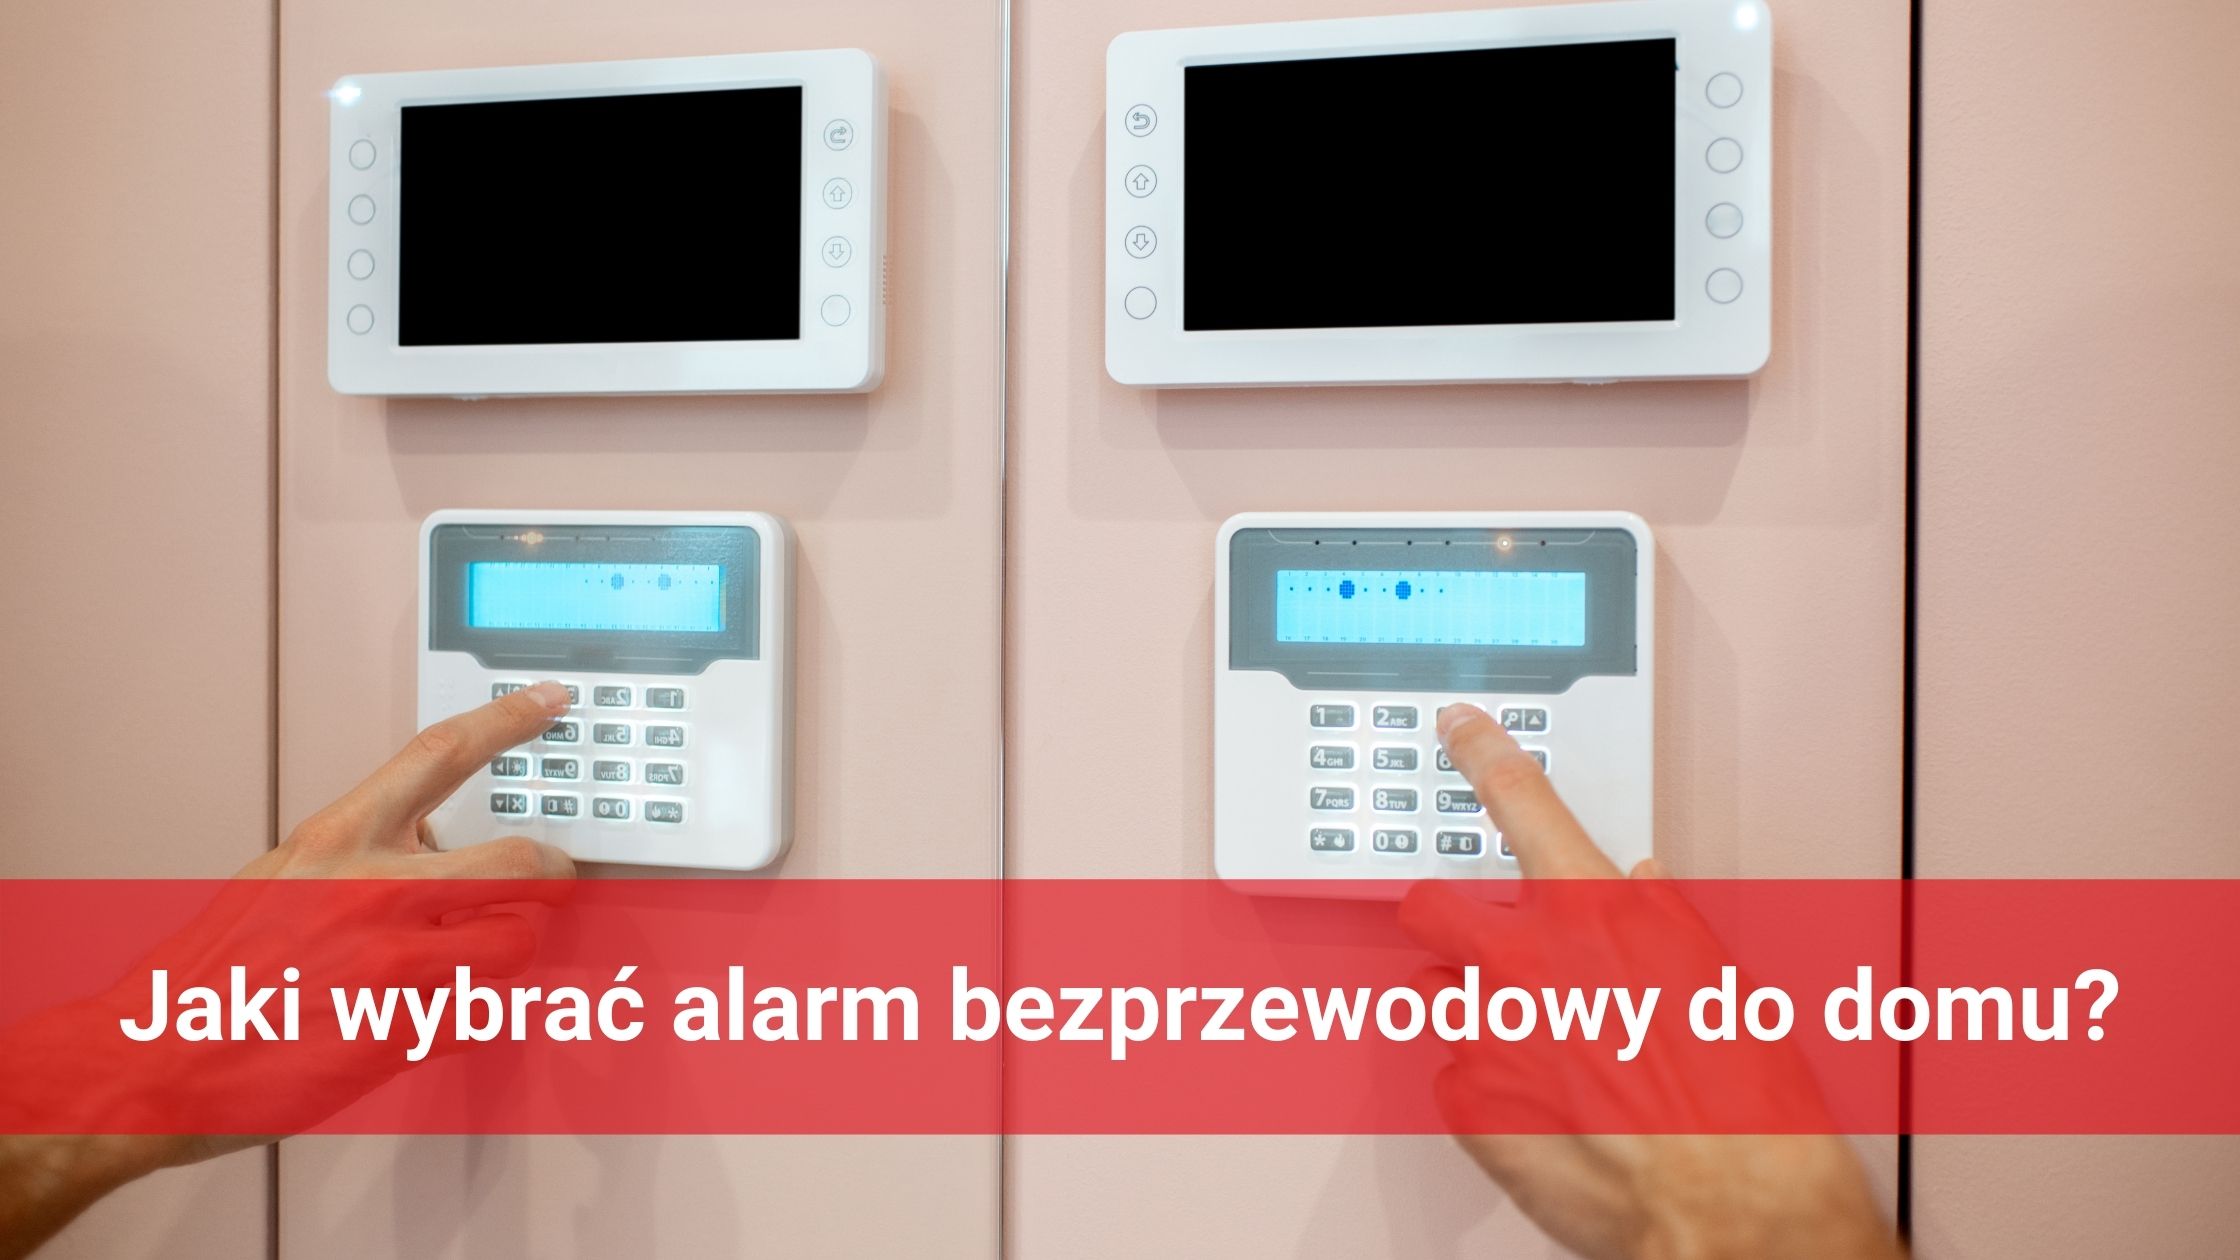 Jaki wybrać alarm bezprzewodowy do domu?